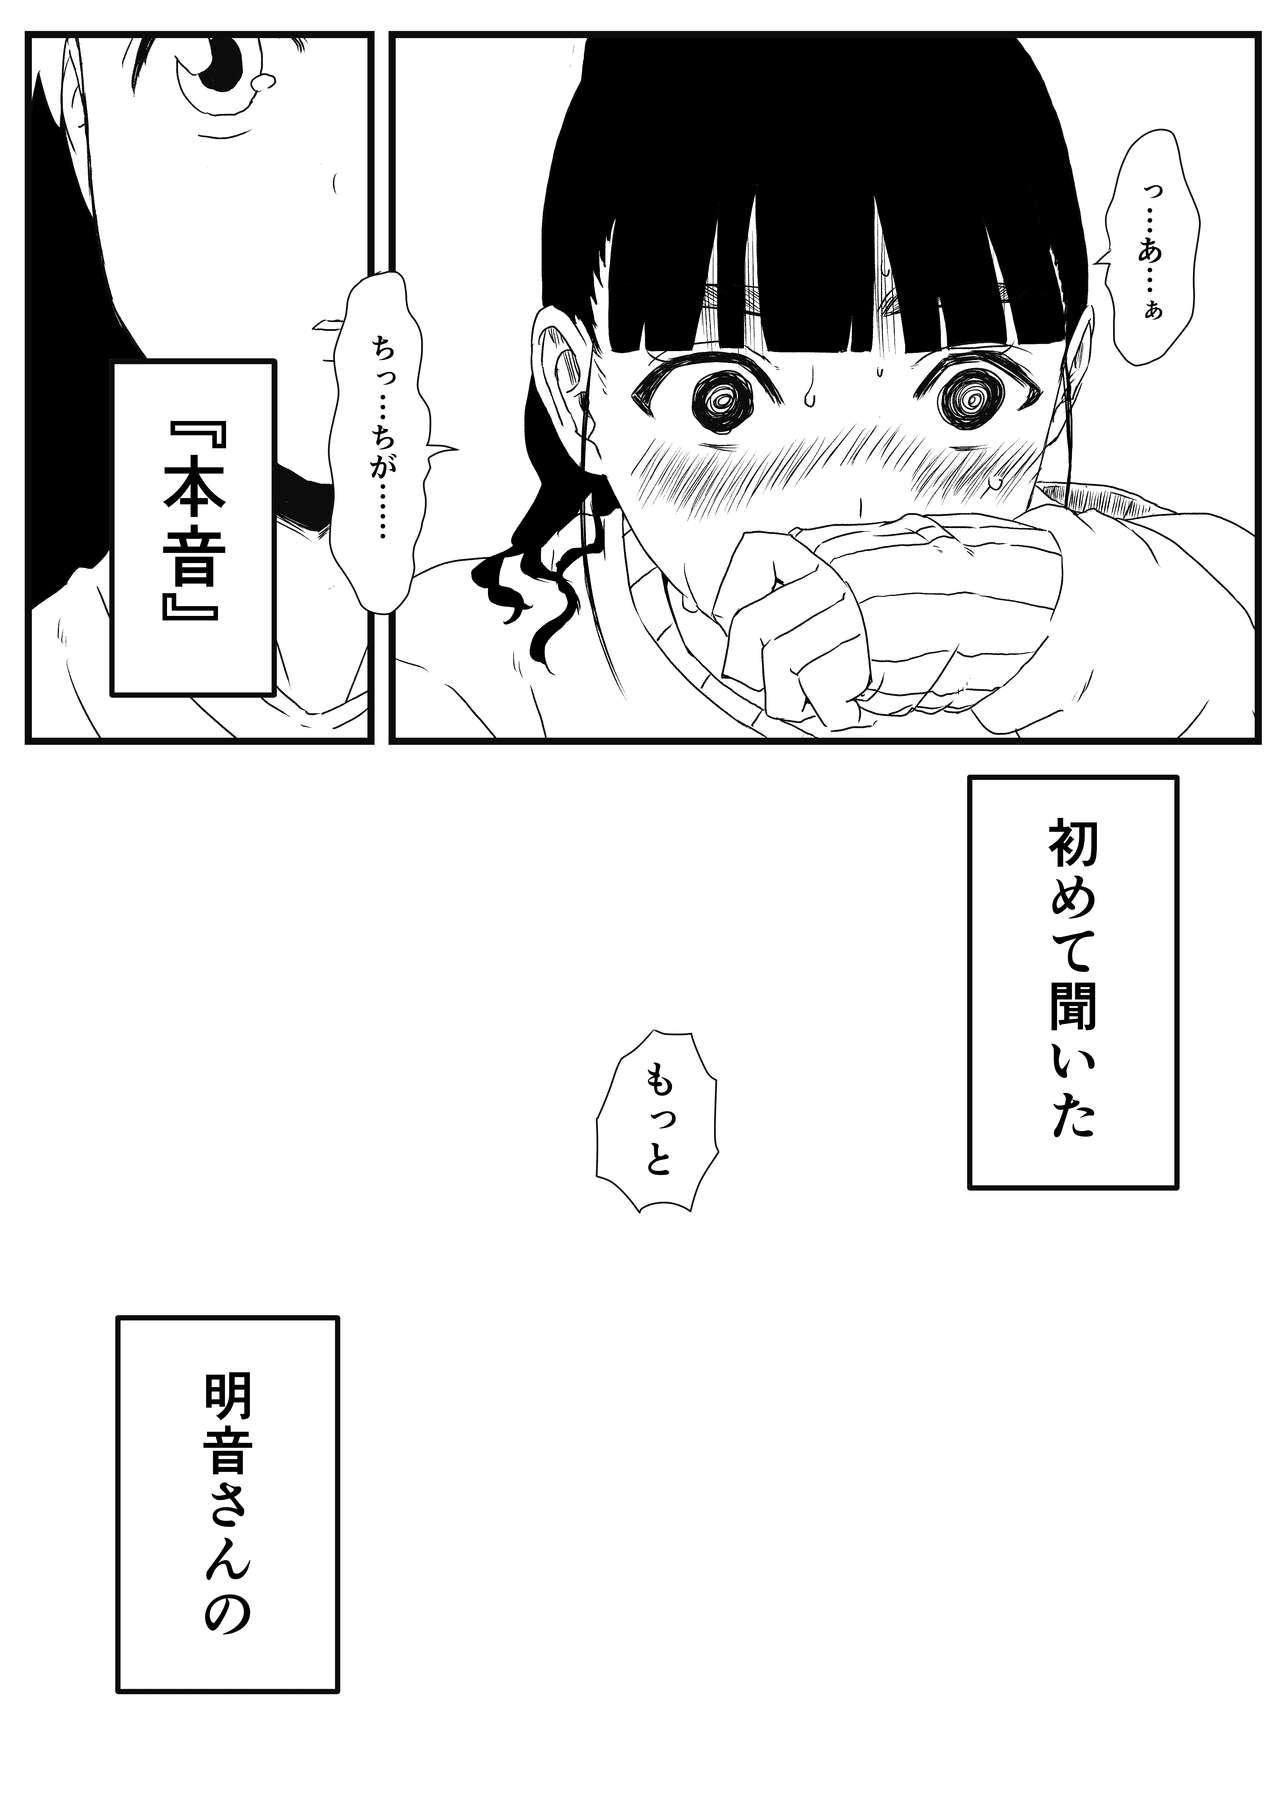 [Senaka] Giri no Ane to no 7-kakan Seikatsu - 1 29